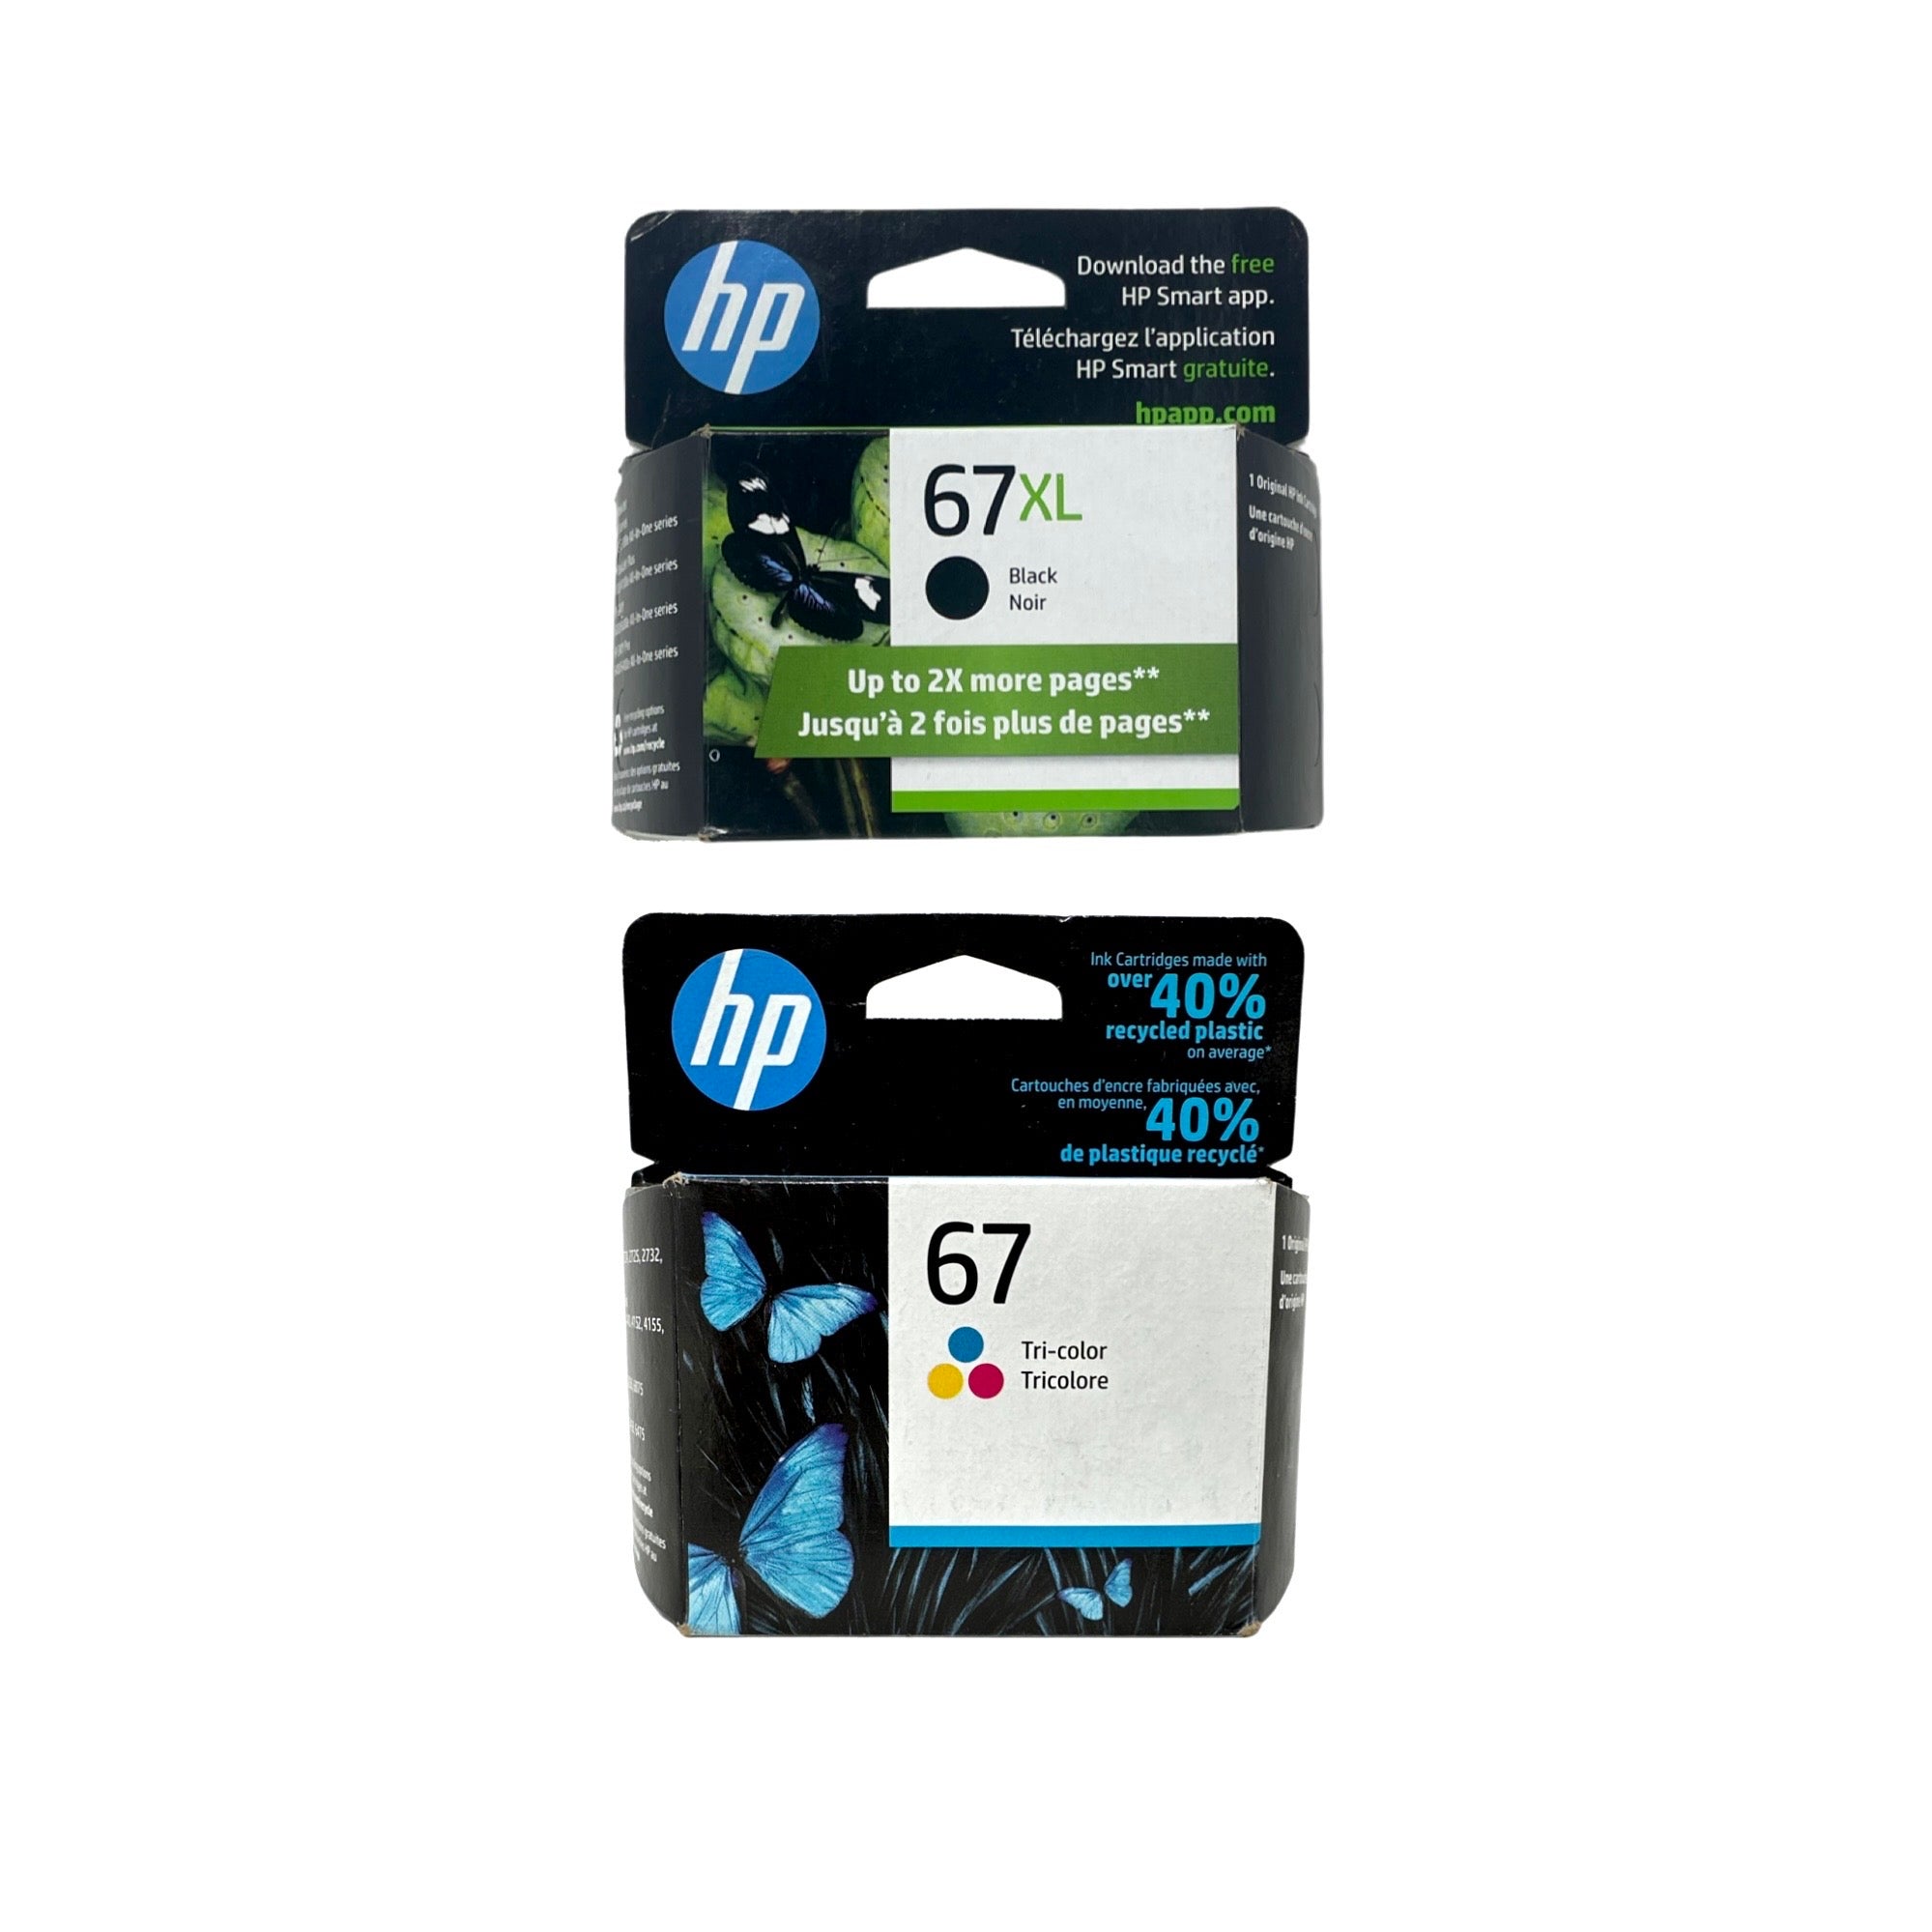 HP 67XL / HP 67 Ink SET - Combo 2 Pack -Black Tri Color - Original HP LaserJet Ink Cartridges